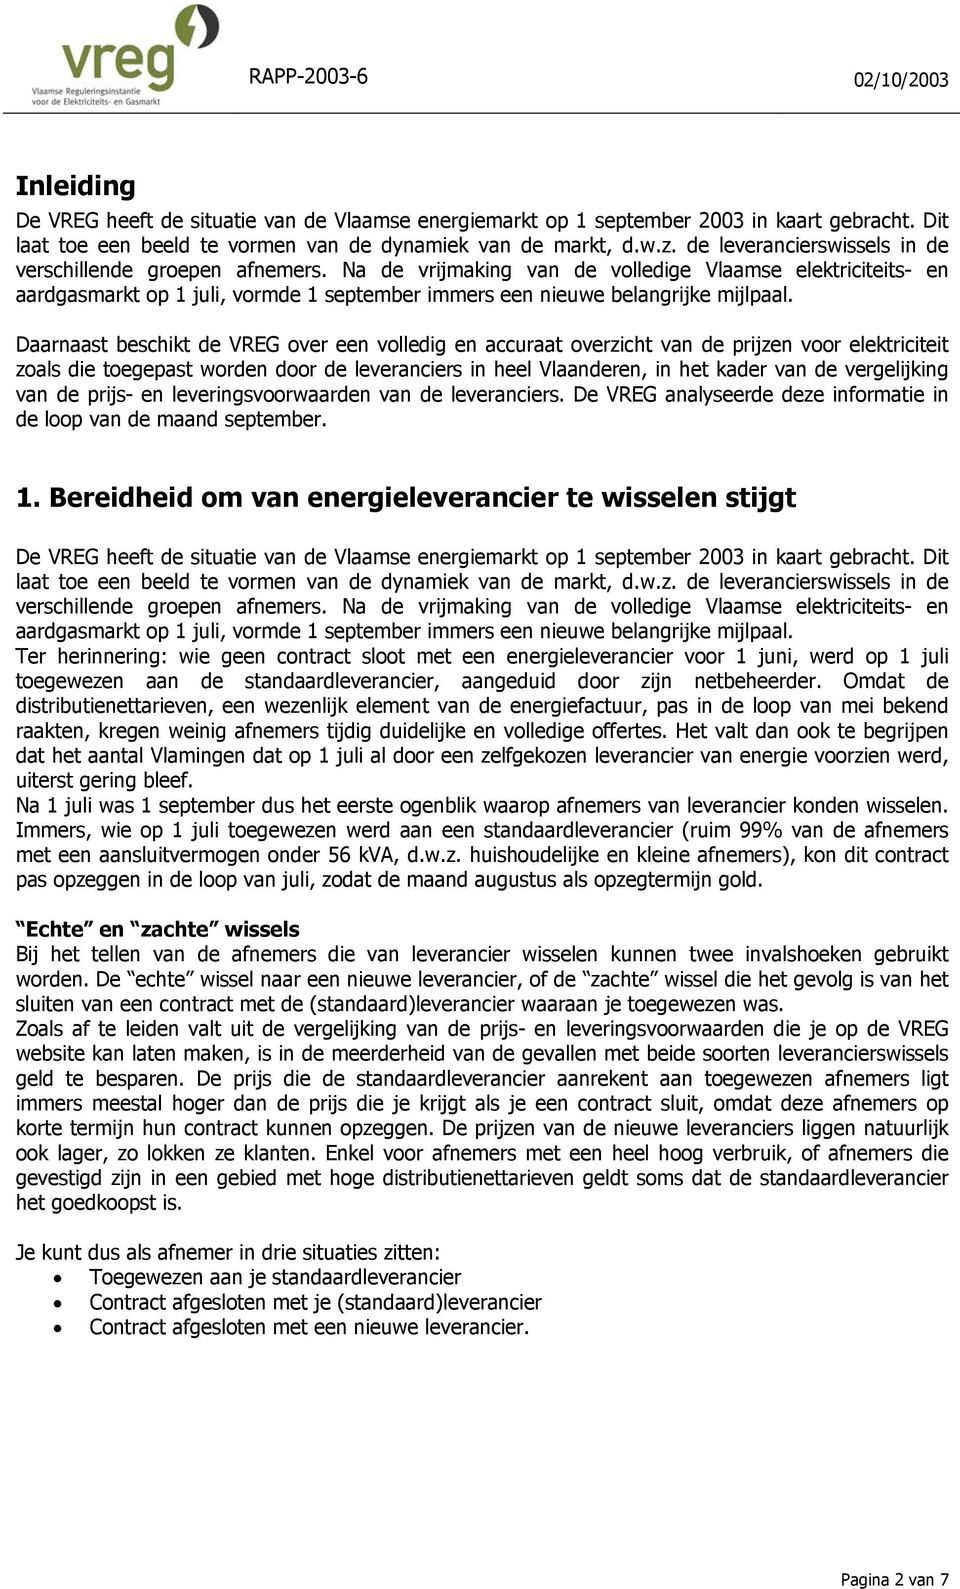 Na de vrijmaking van de volledige Vlaamse elektriciteits- en aardgasmarkt op 1 juli, vormde 1 september immers een nieuwe belangrijke mijlpaal.